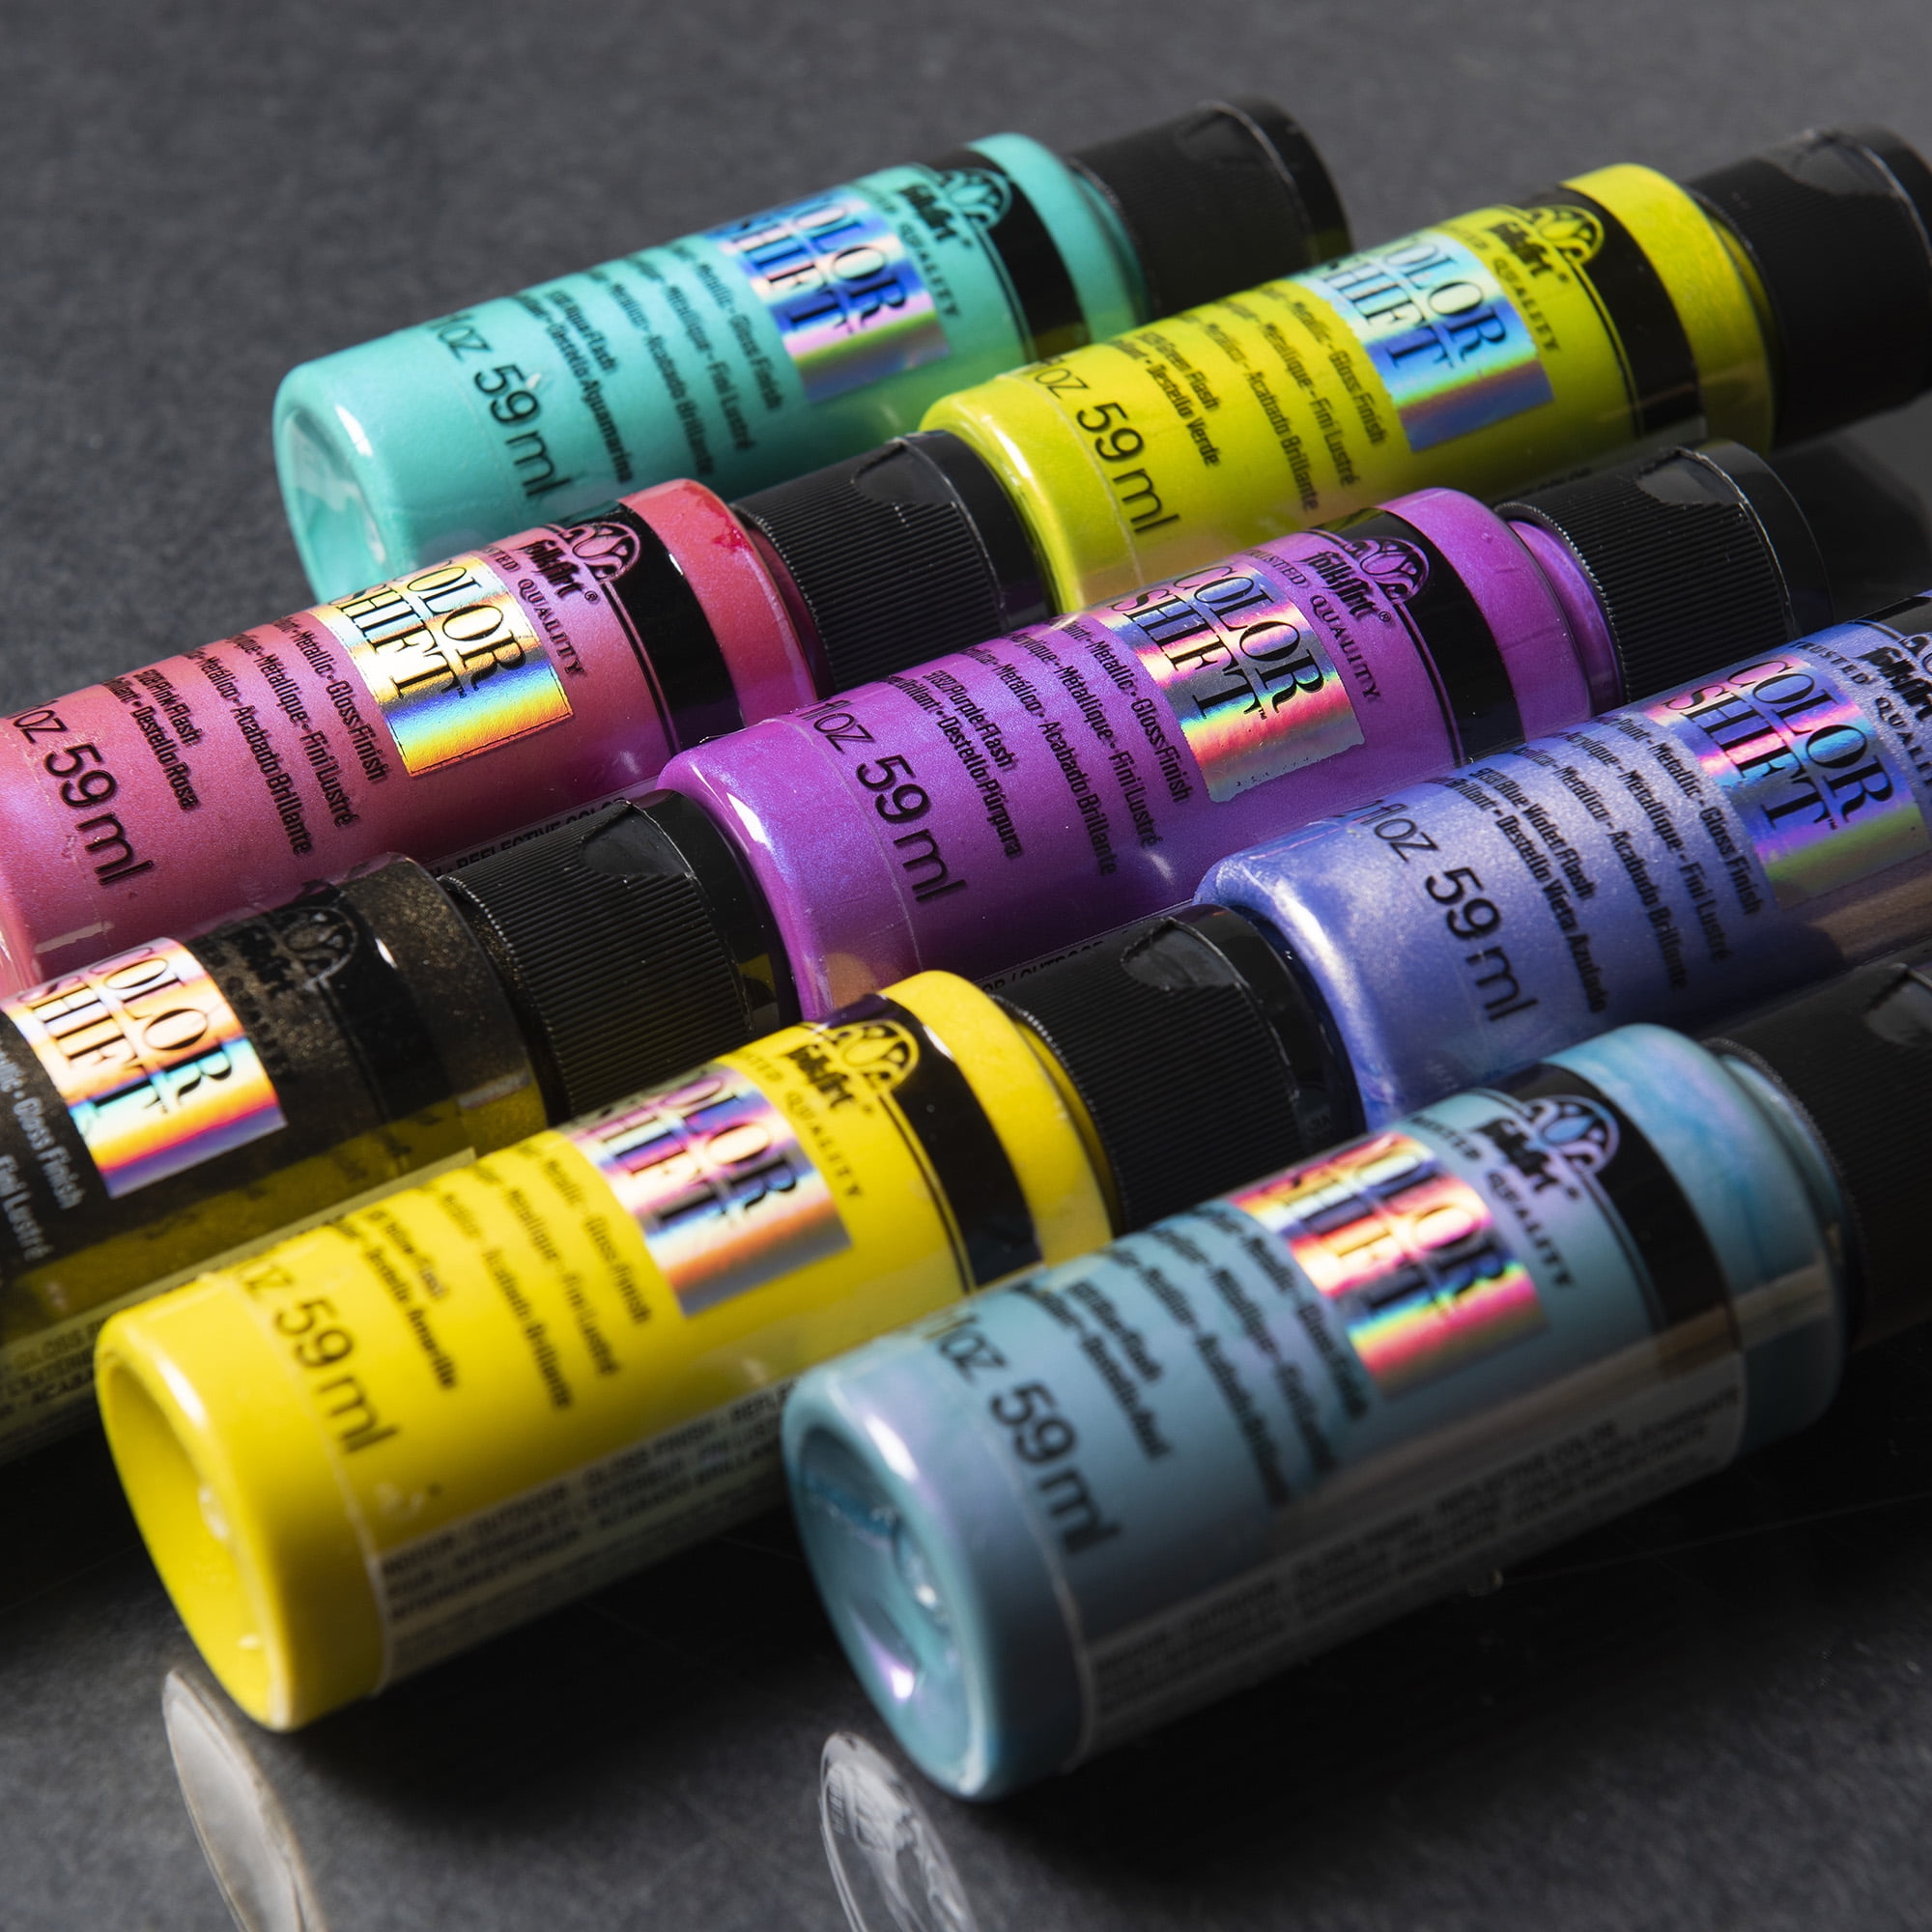 Shop Plaid FolkArt ® Color Shift™ Acrylic Paint - Pastel Purple, 2 oz. -  12009 - 12009